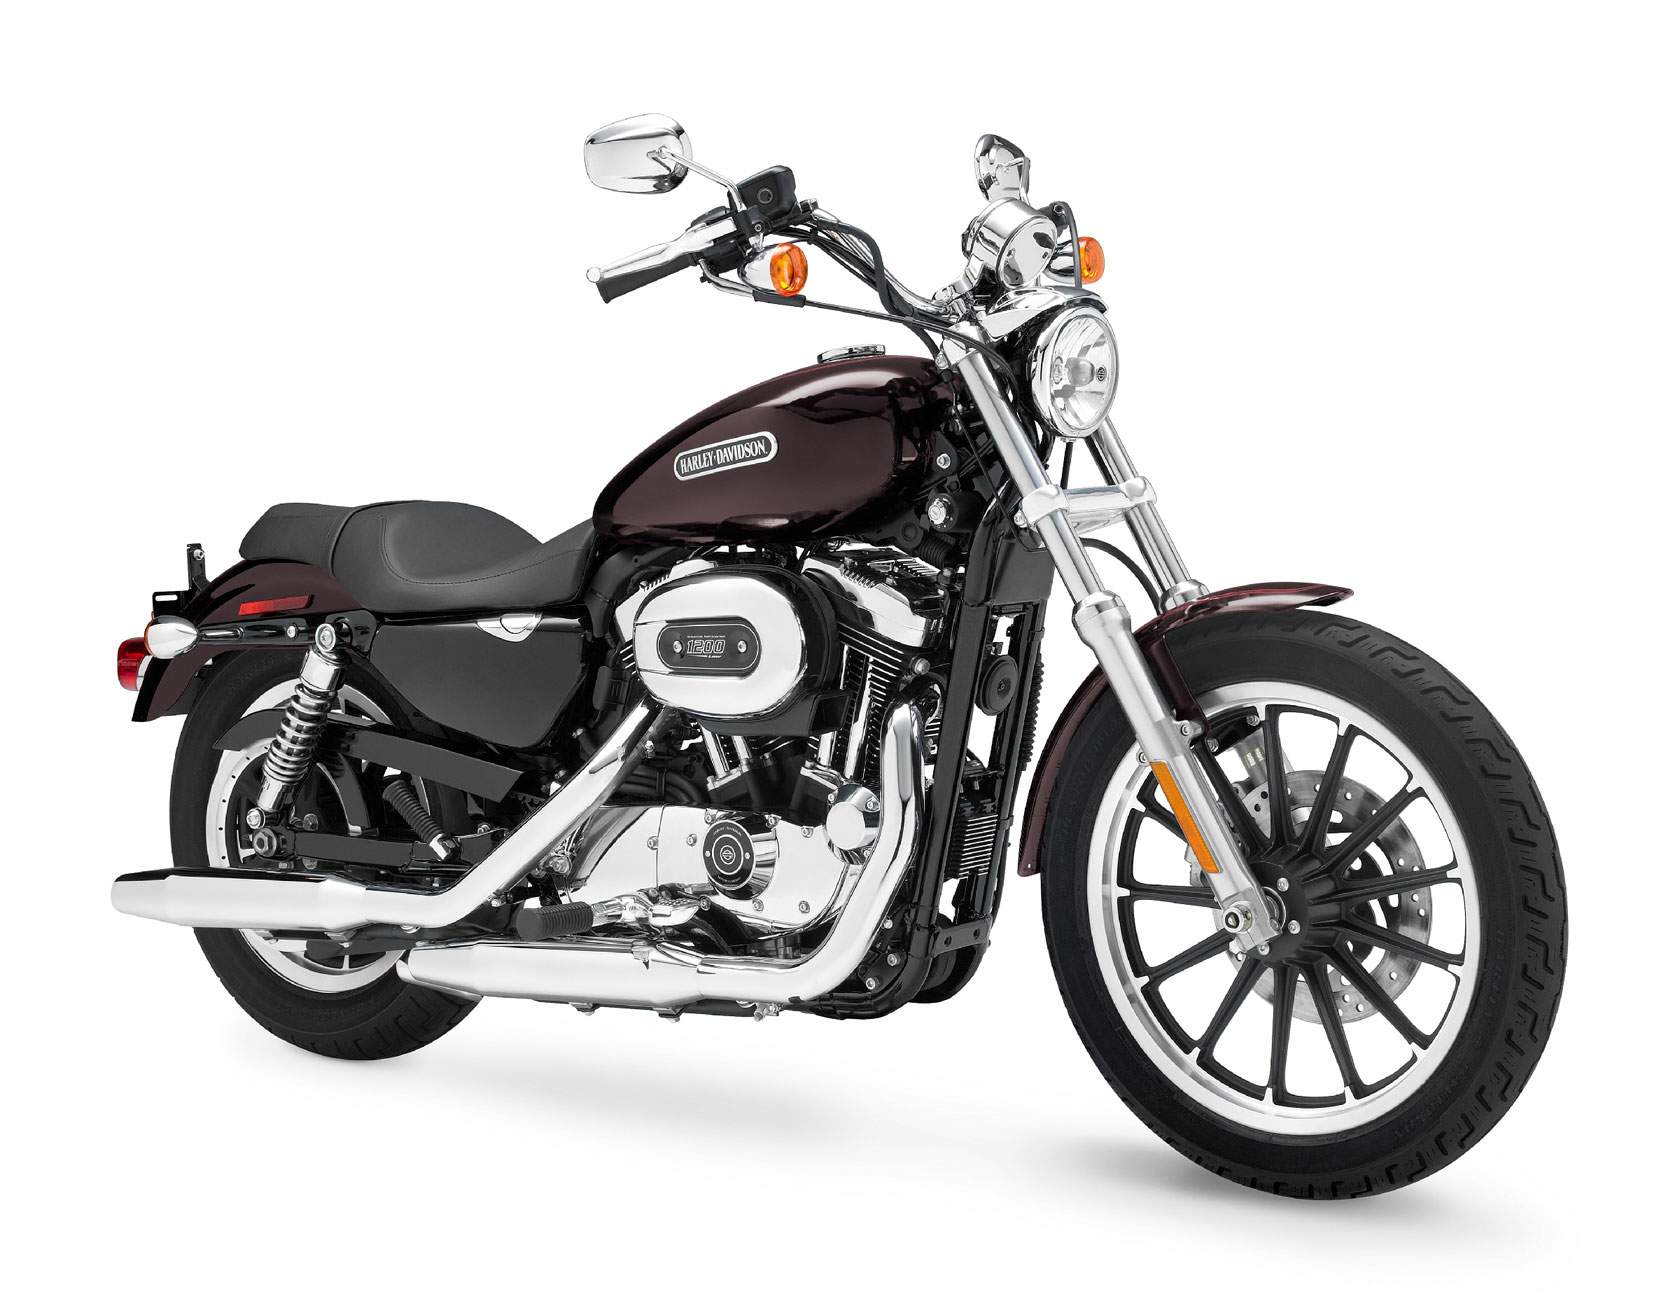 Especificaciones técnicas de Harley-Davidson Harley Davidson XL 1200L Sportster Low (2010-11)